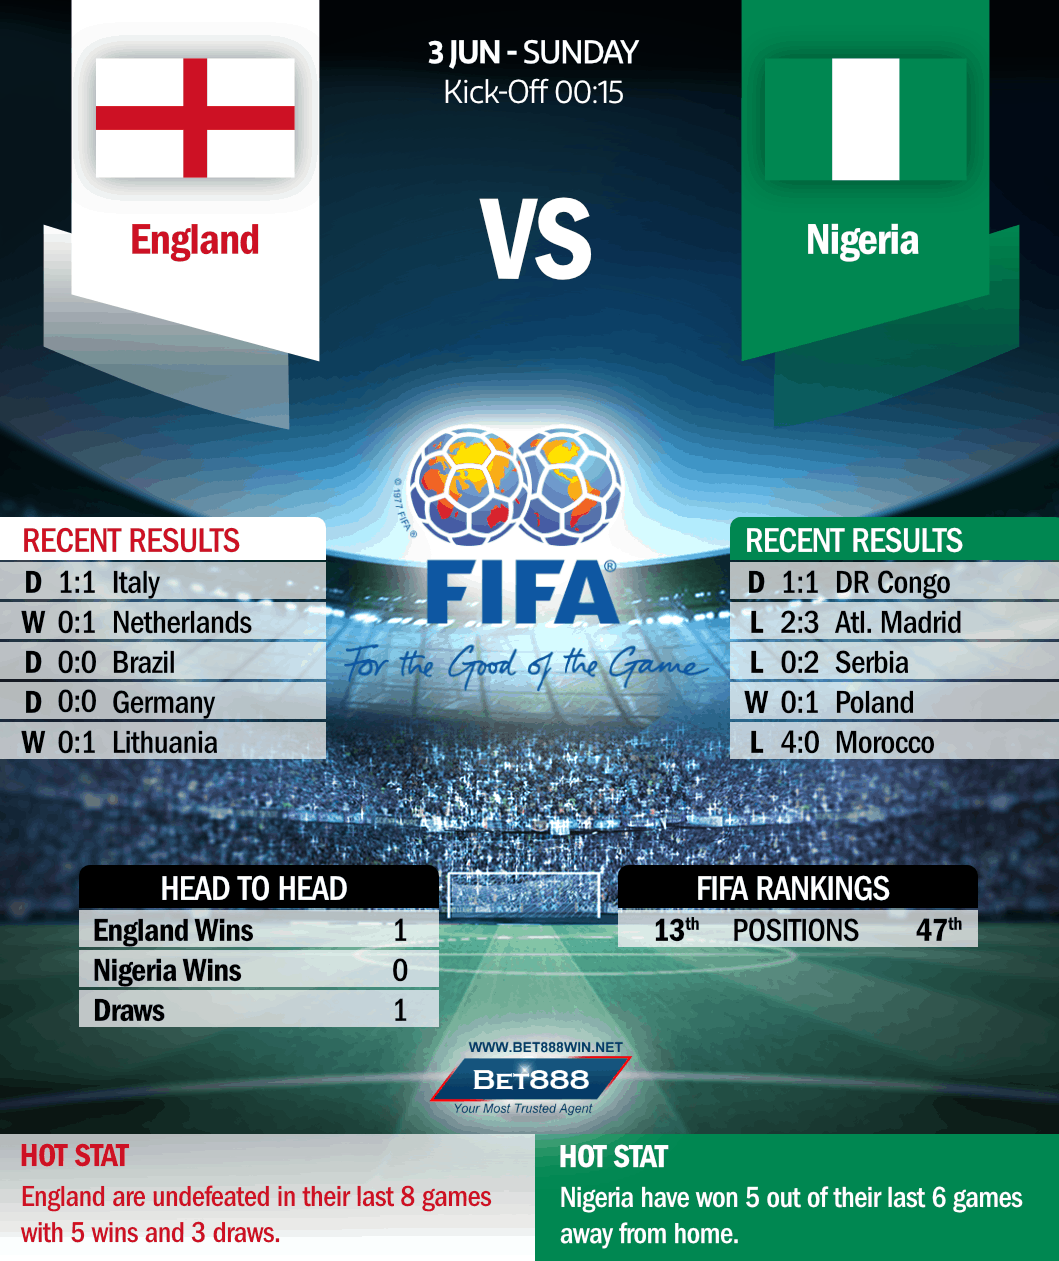 England vs Nigeria 03/06/18